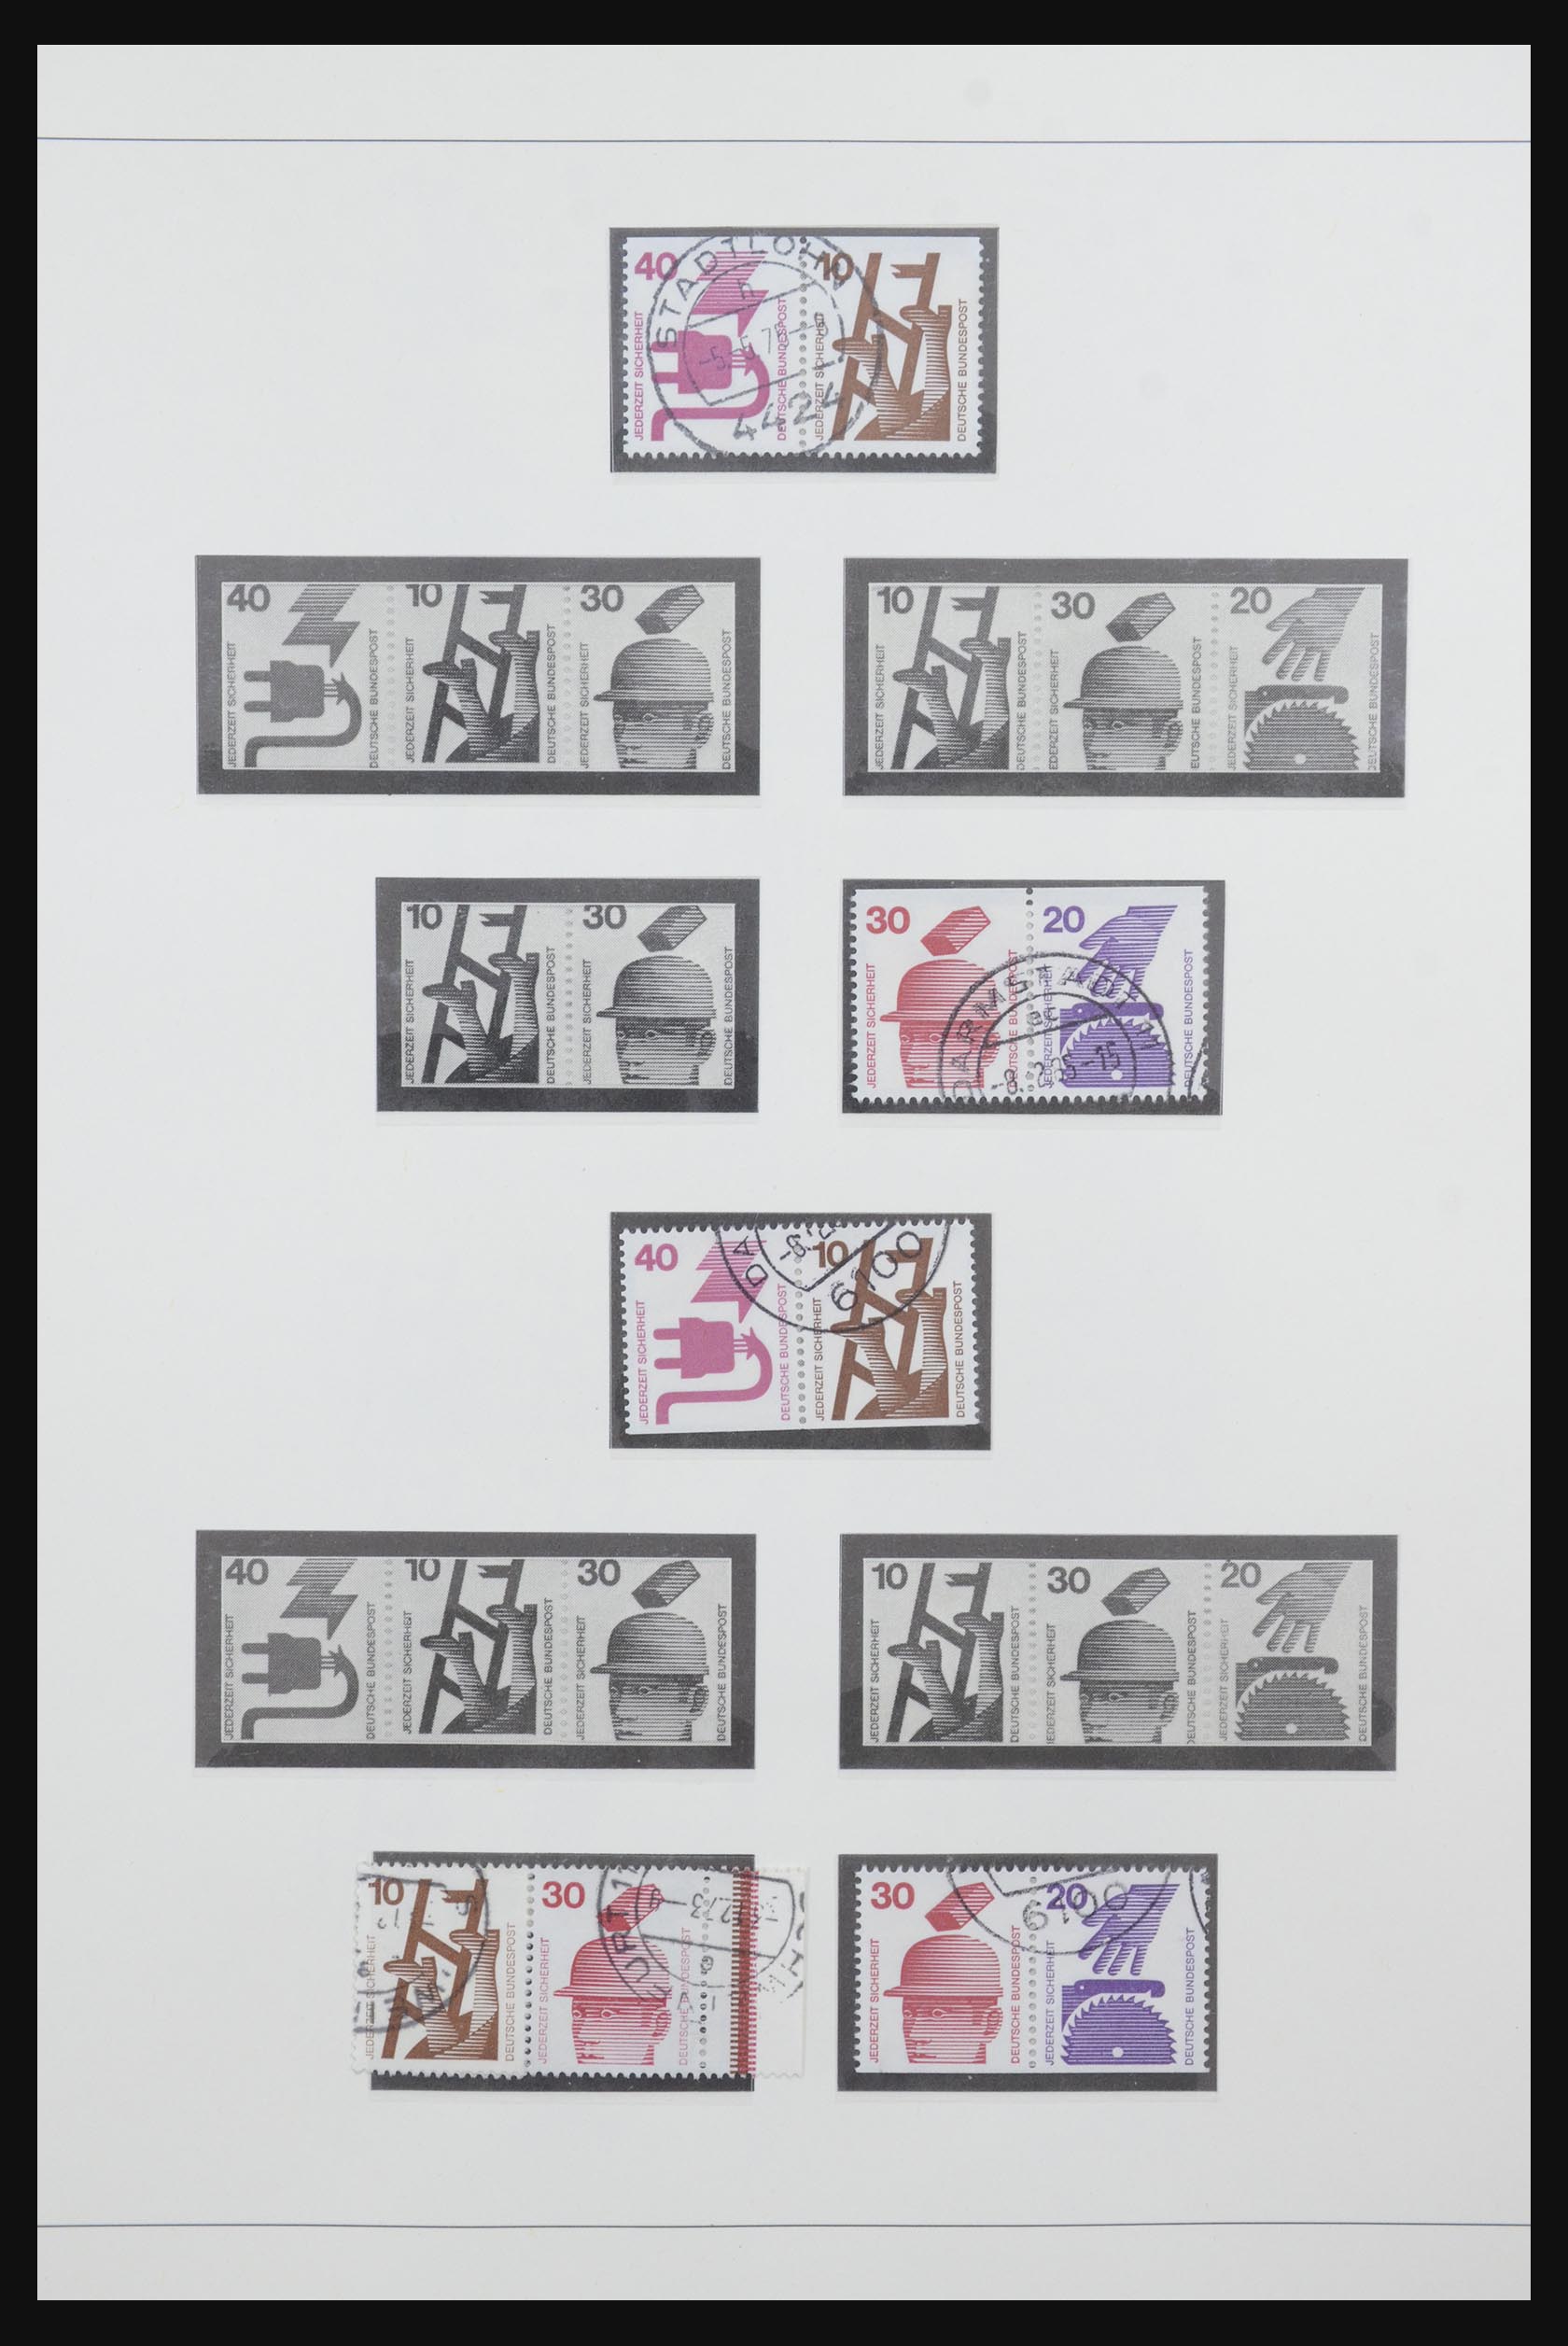 31842 052 - 31842 Bundespost combinations 1951-2003.